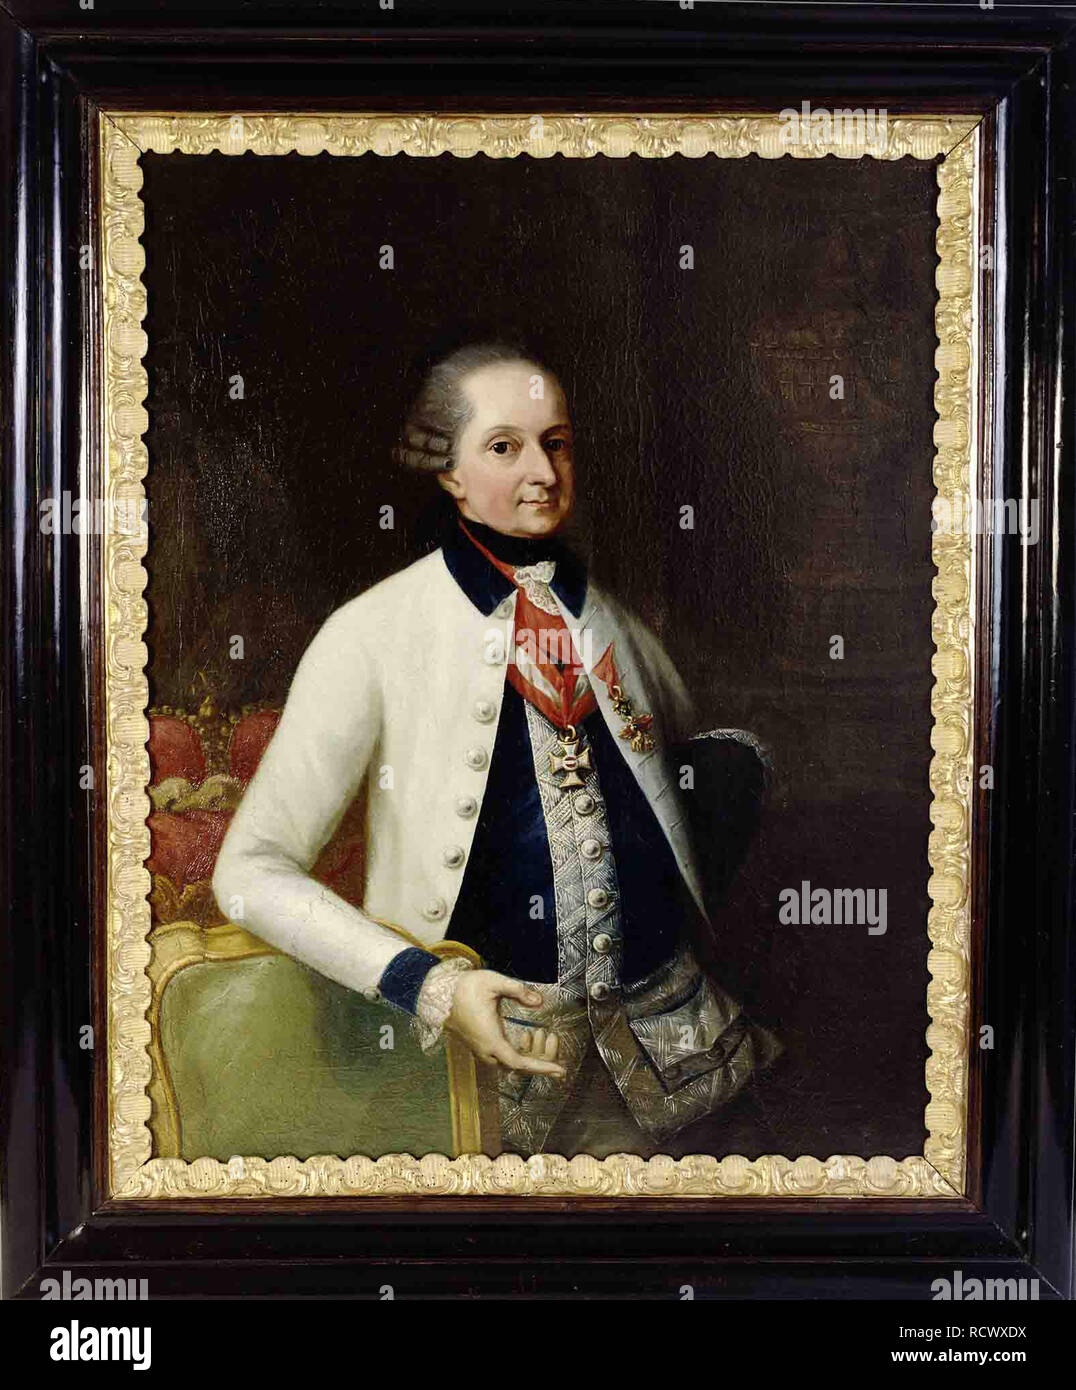 Nikolaus I, Prince Esterházy (1714-1790) dans l'uniforme de son régiment d'infanterie hongroise n° 33. Musée : Esterházy Privatstiftung. Auteur : KNOLLER, MARTIN. Banque D'Images